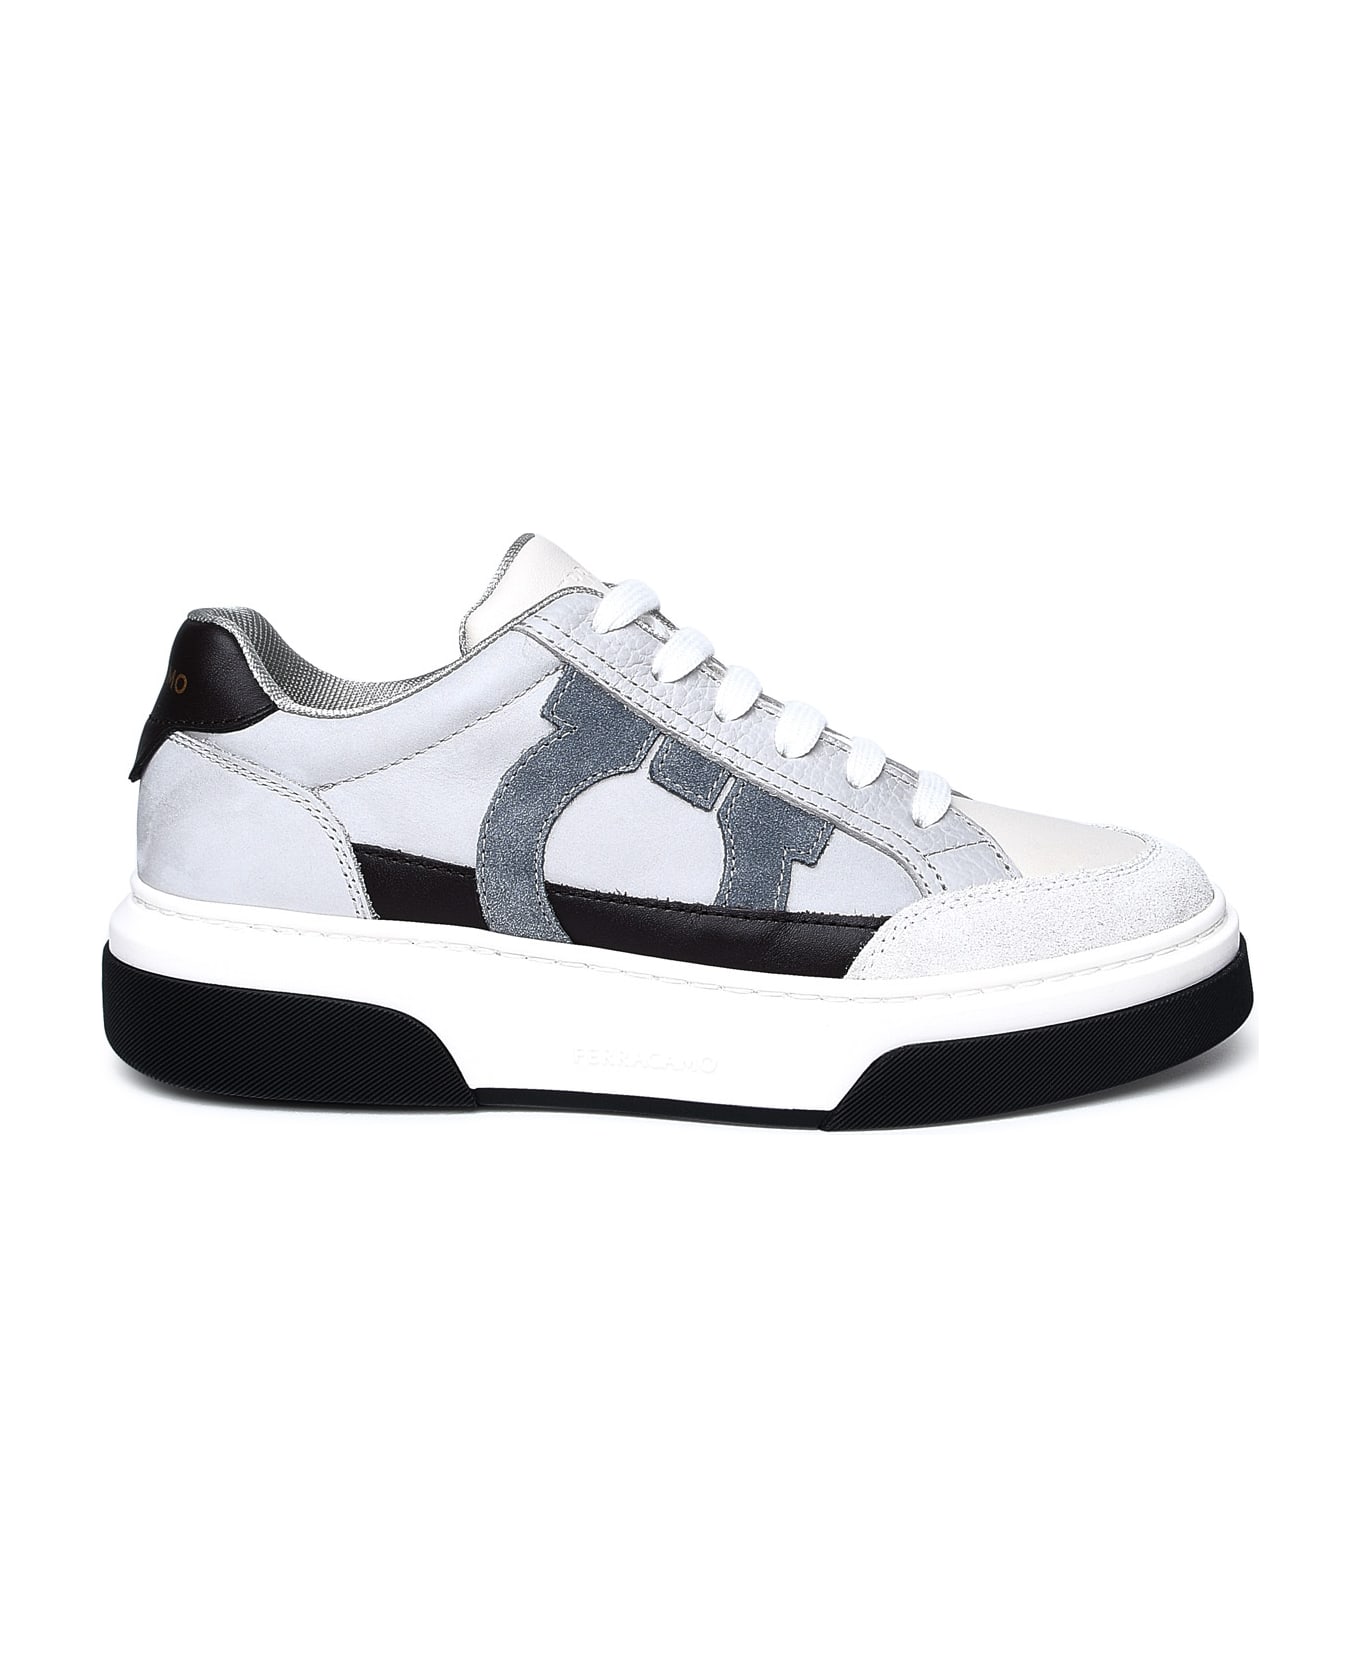 Ferragamo Multicolor Nappa Leather Sneakers - Bianco 511